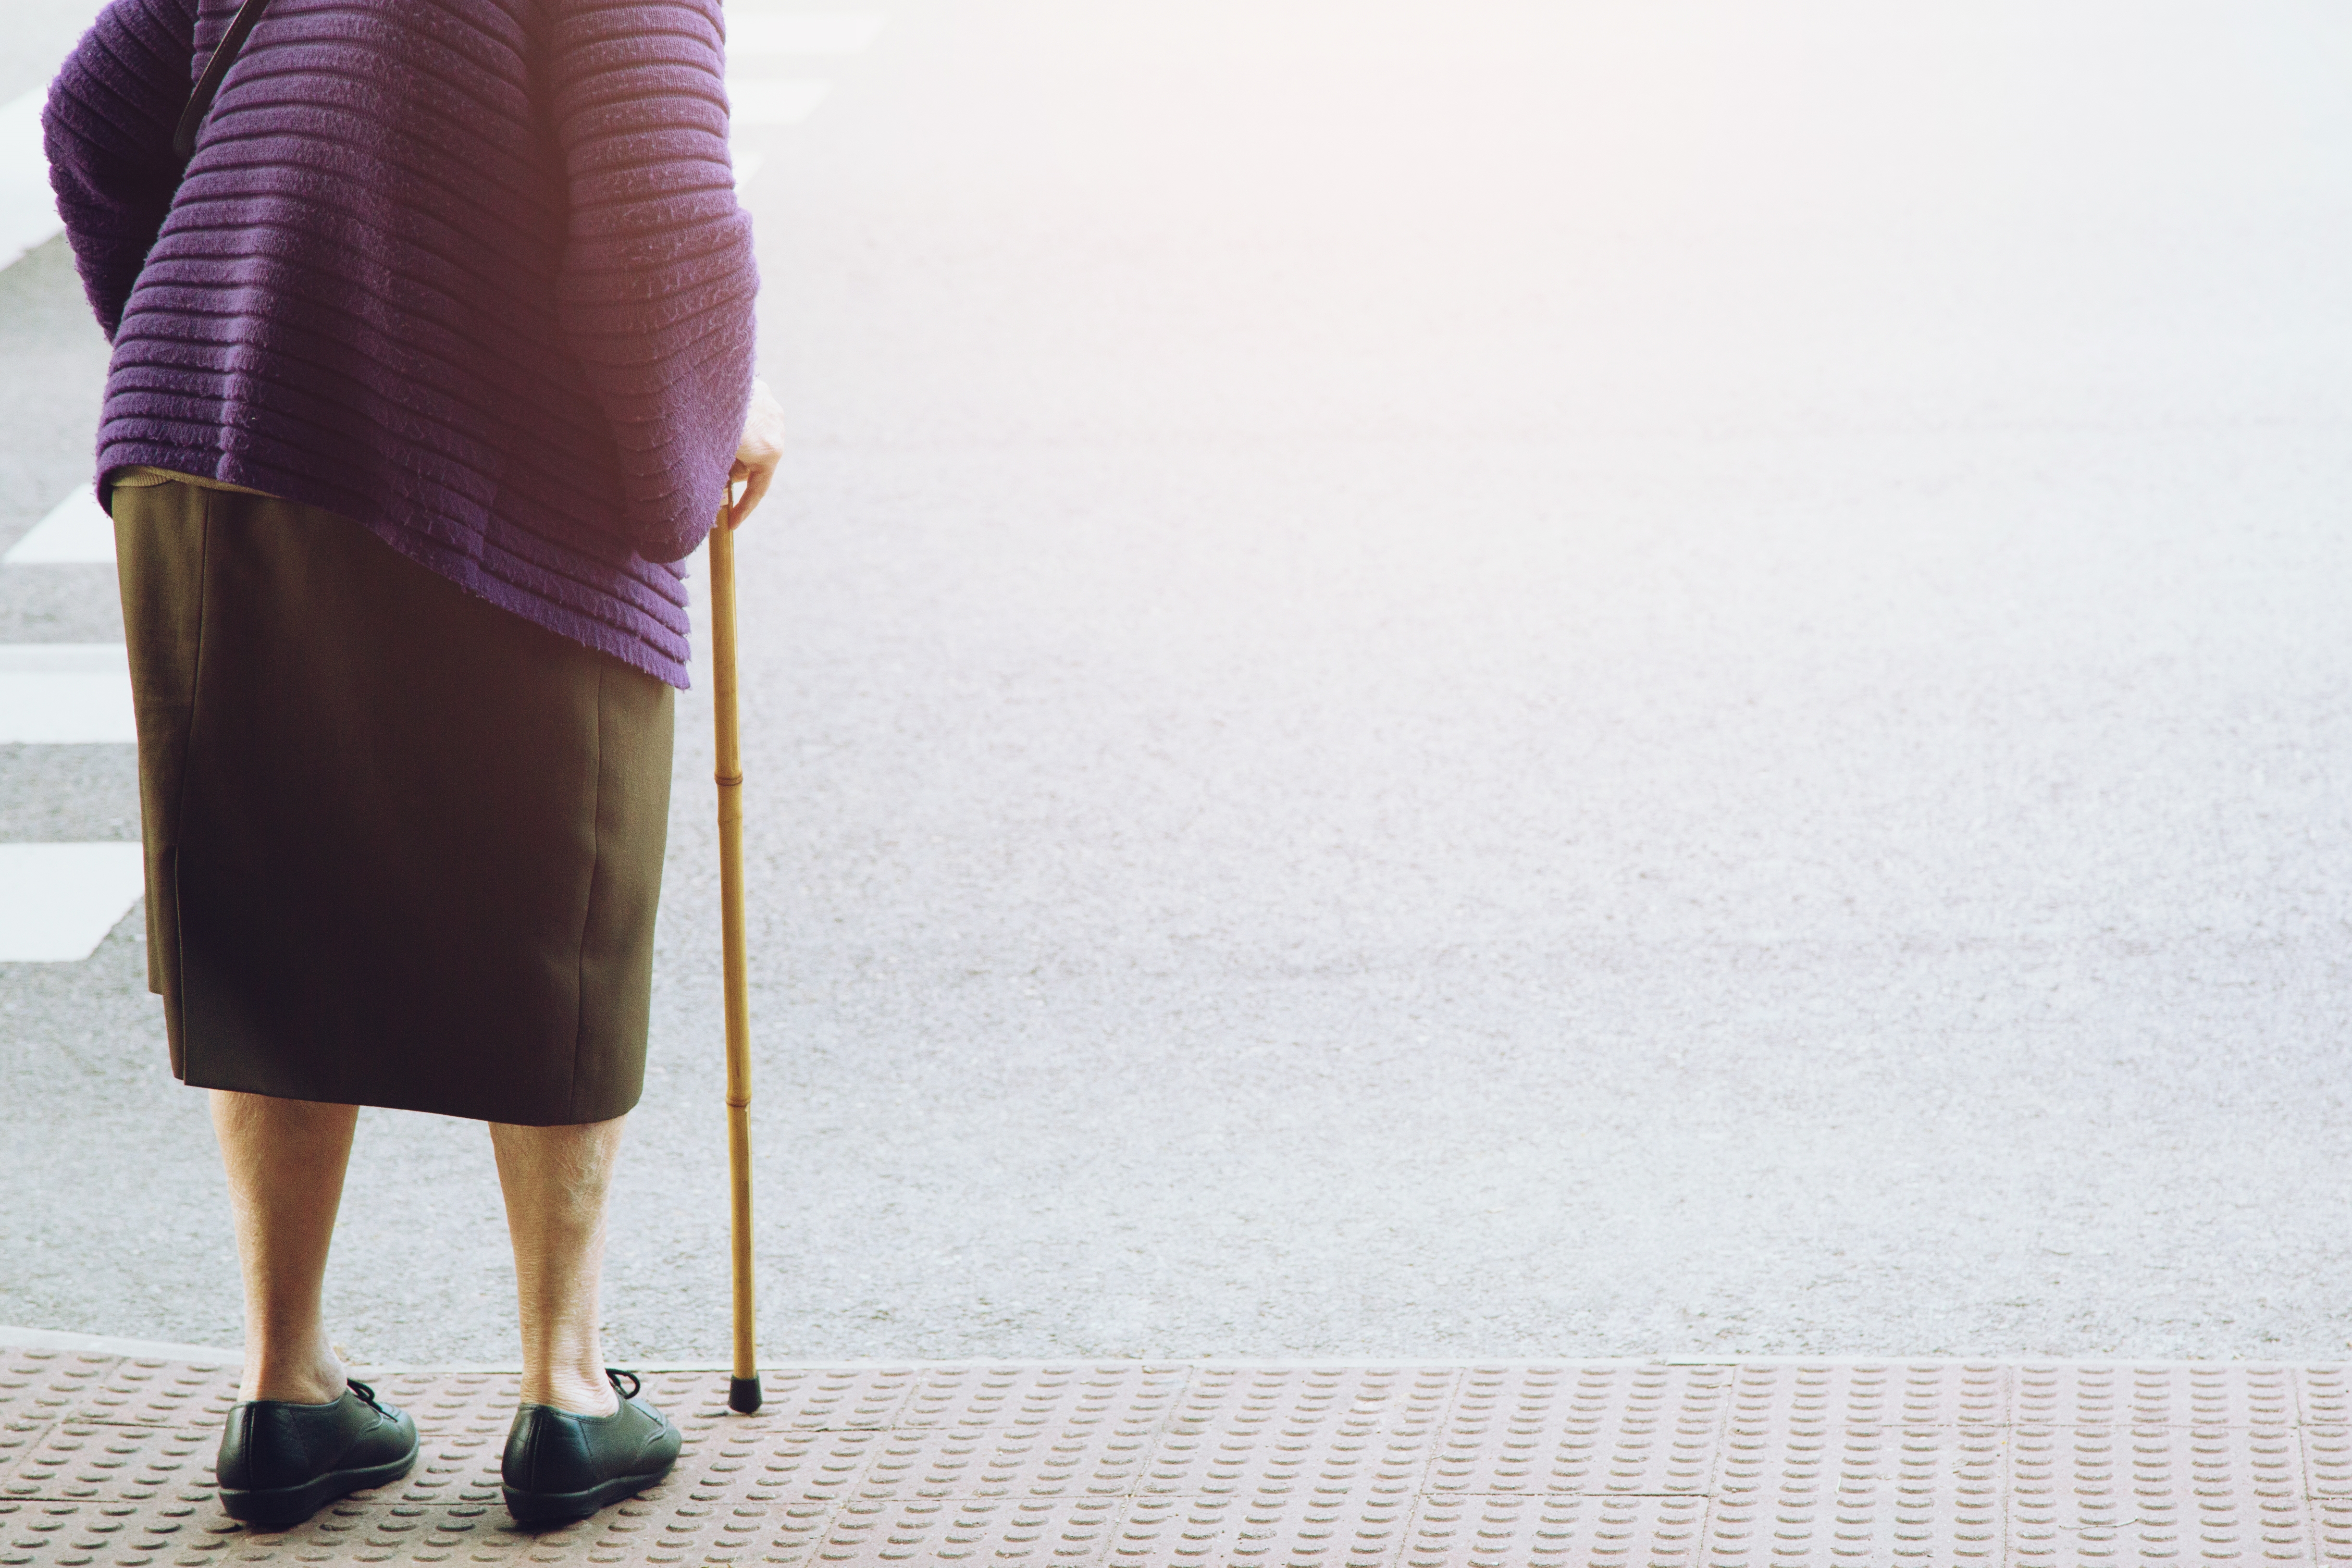 Elderly old woman crossing the street alone | Source: Shutterstock